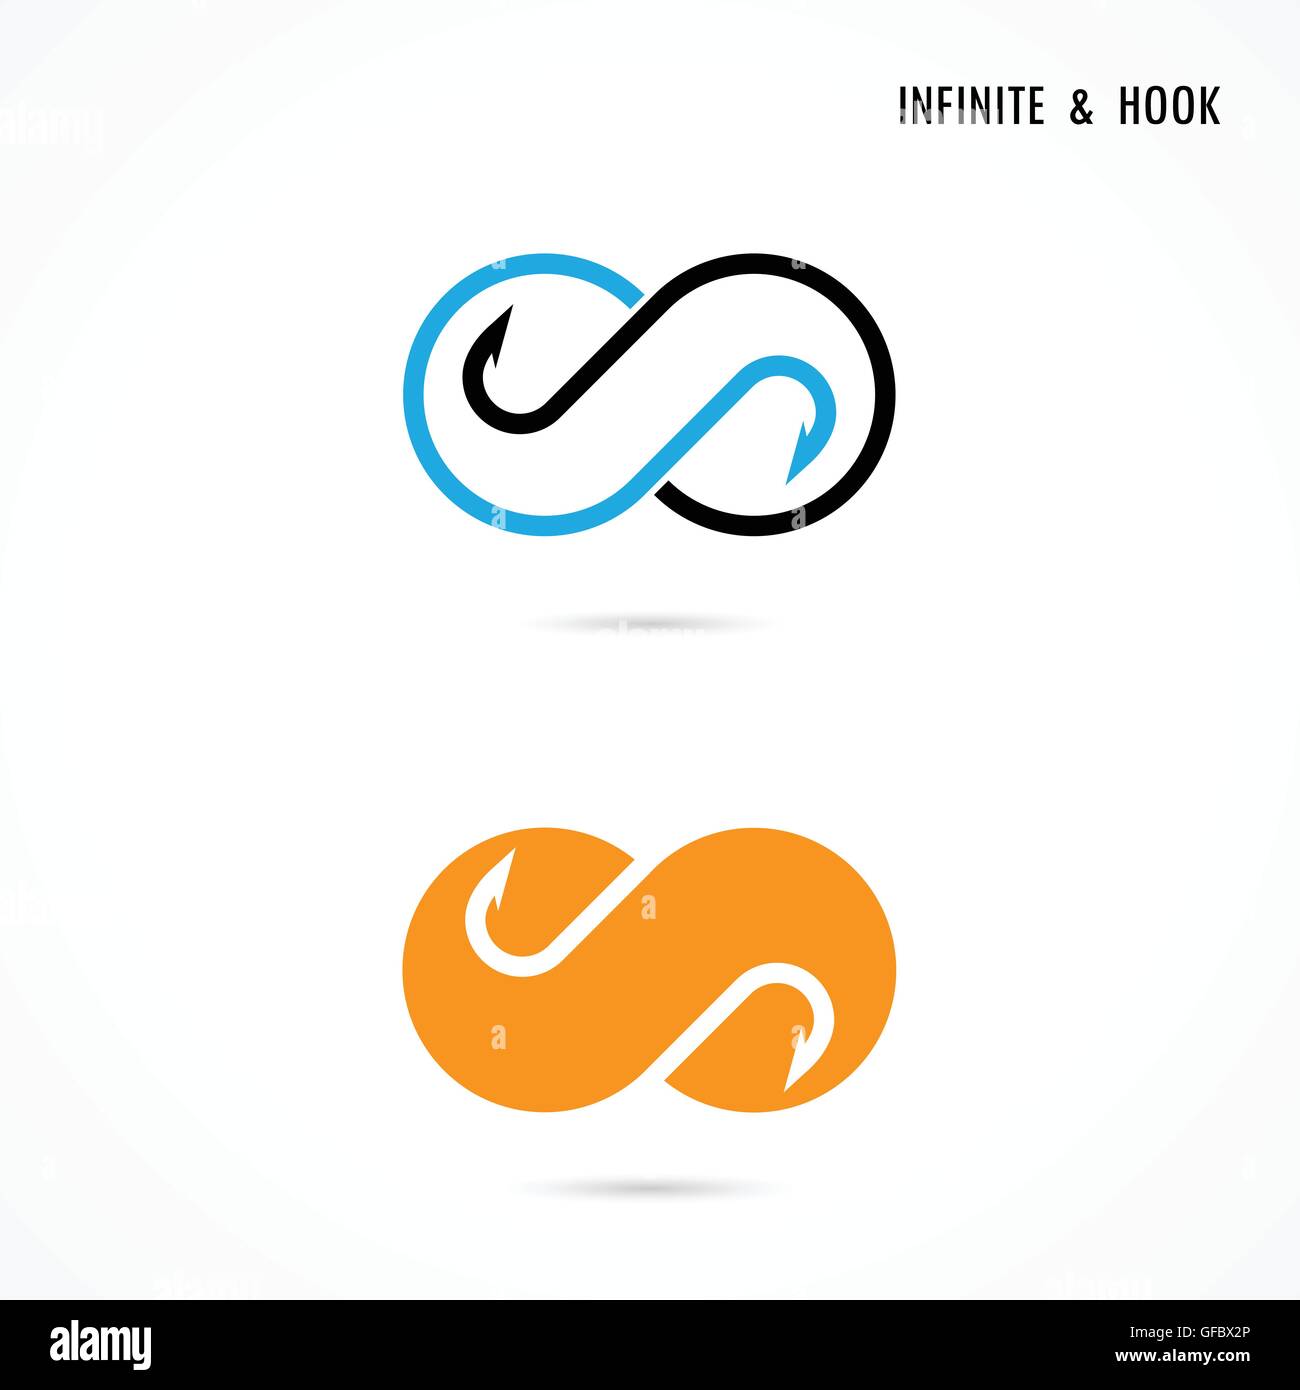 Fishhook ed infiniti elementi del logo design.icona infinito.gancio astratta logo.illustrazione vettoriale. Illustrazione Vettoriale